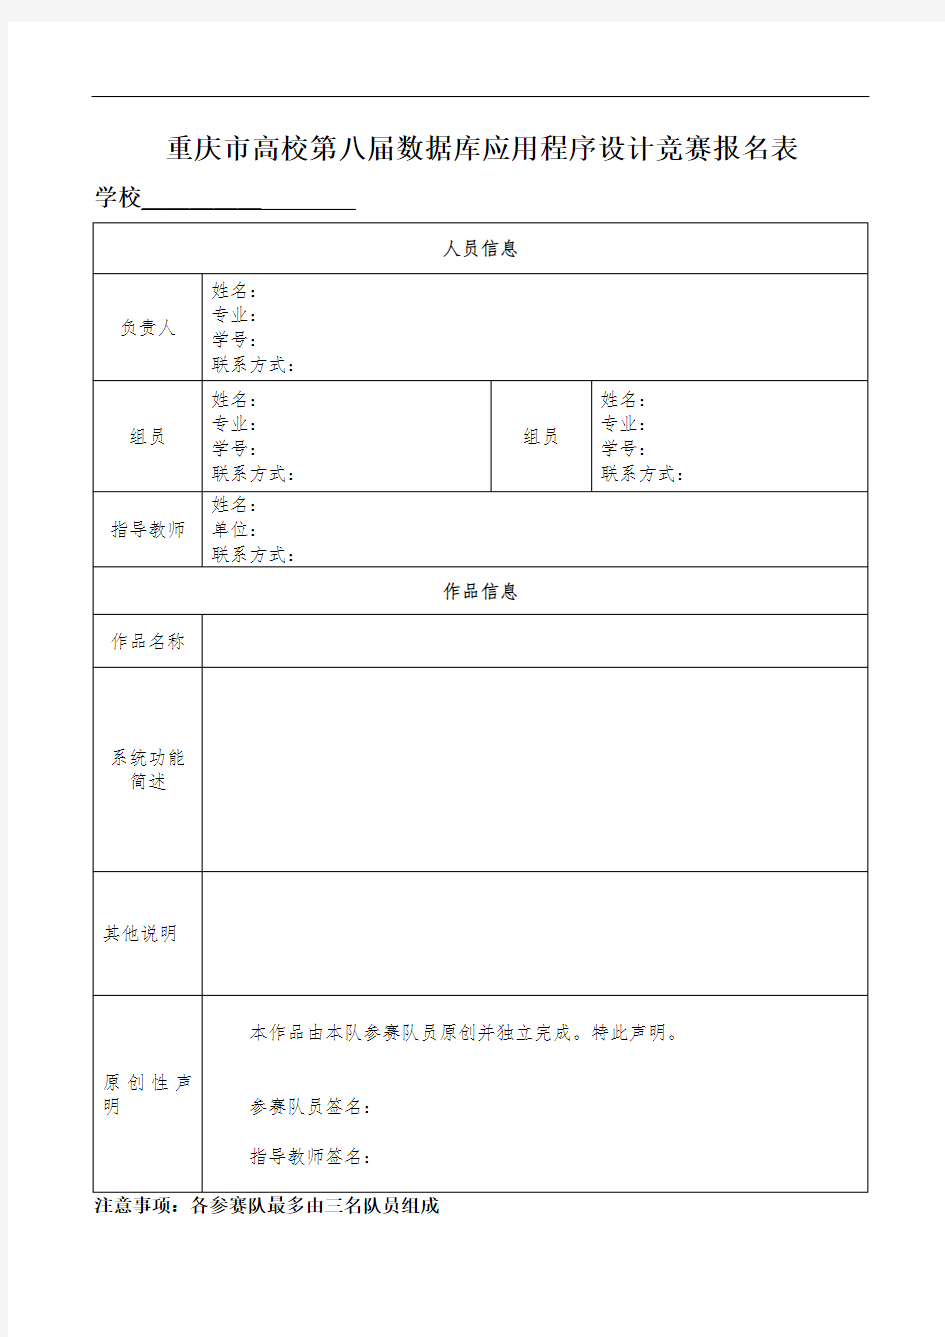 重庆市高校第八届数据库应用程序设计竞赛报名表